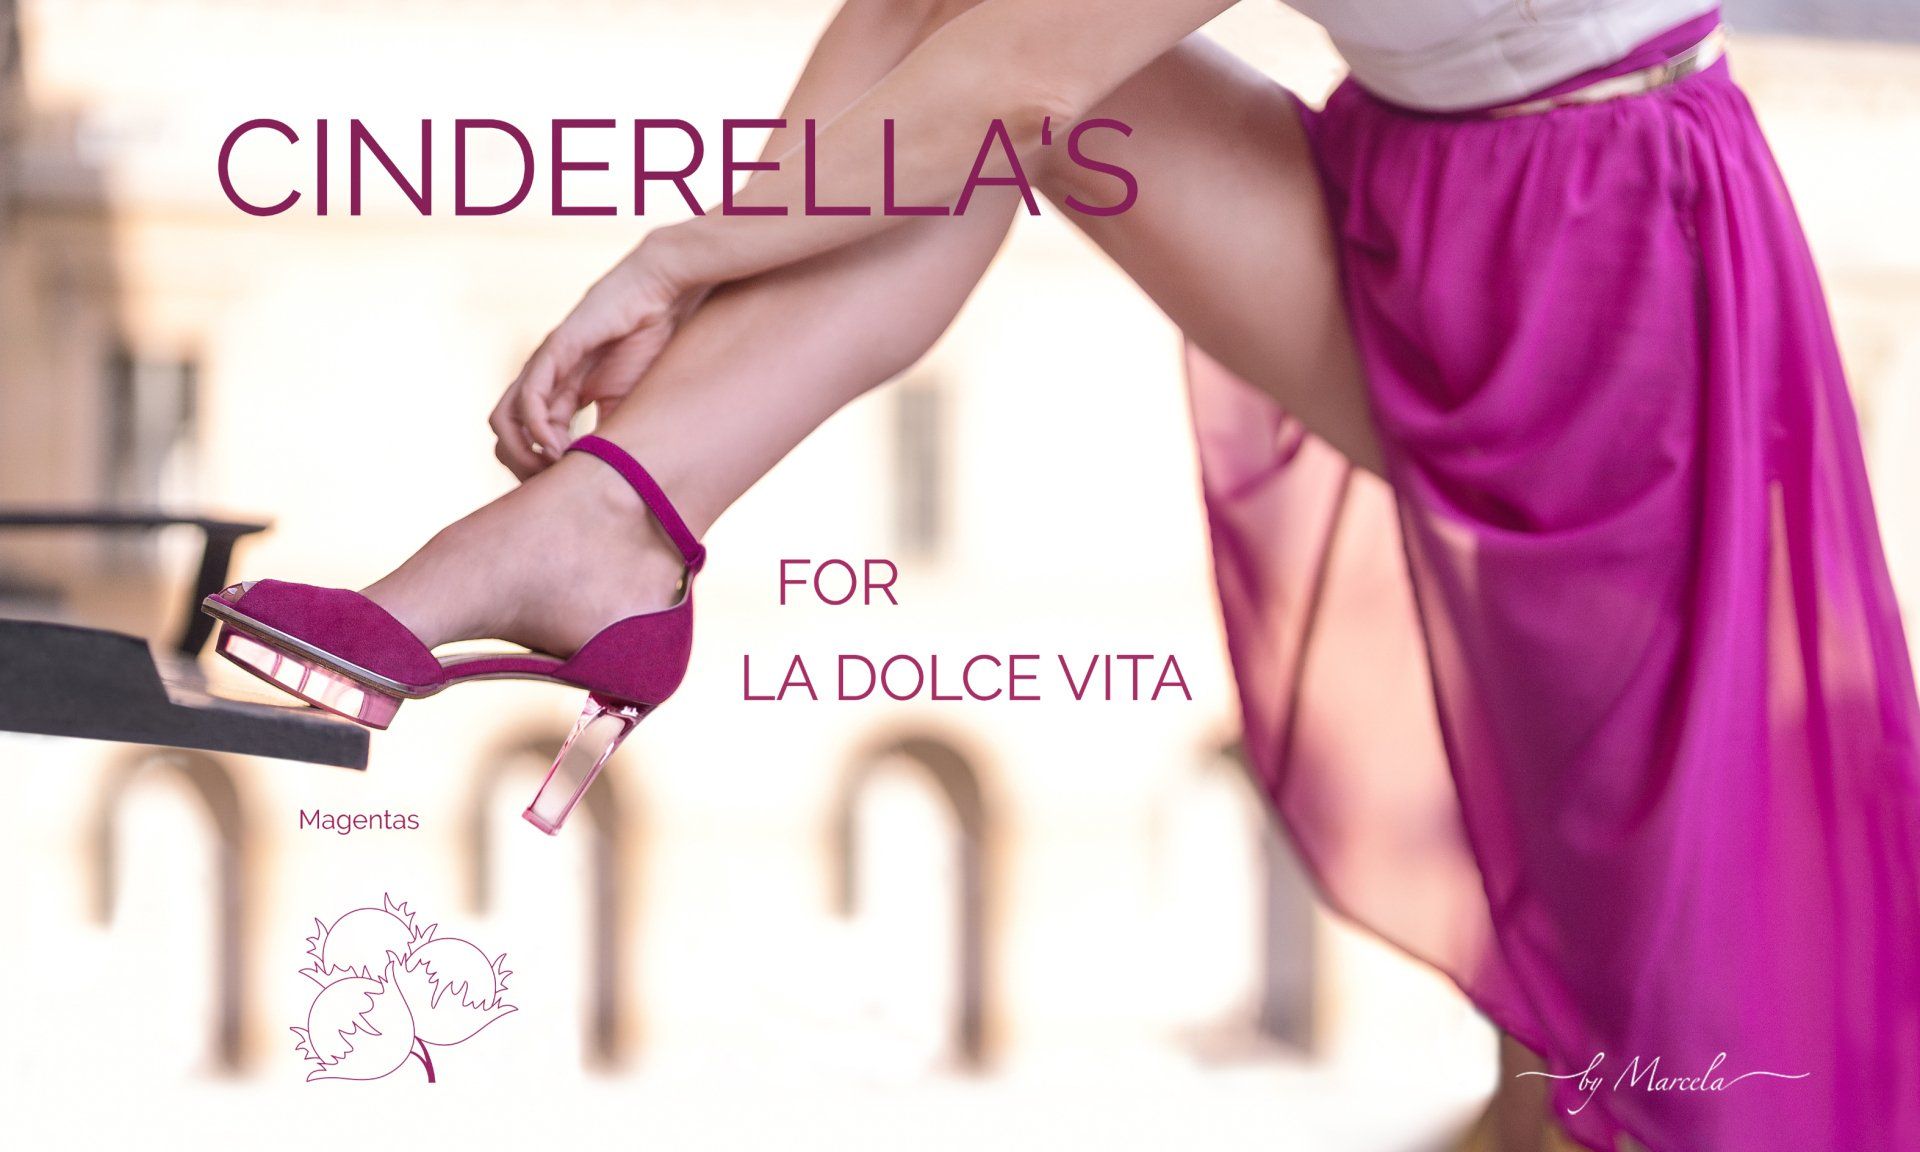 Rosa pink Cinderellas Dirndl Schuhe für Oktoberfest mit transparentem high heel namens Magentas